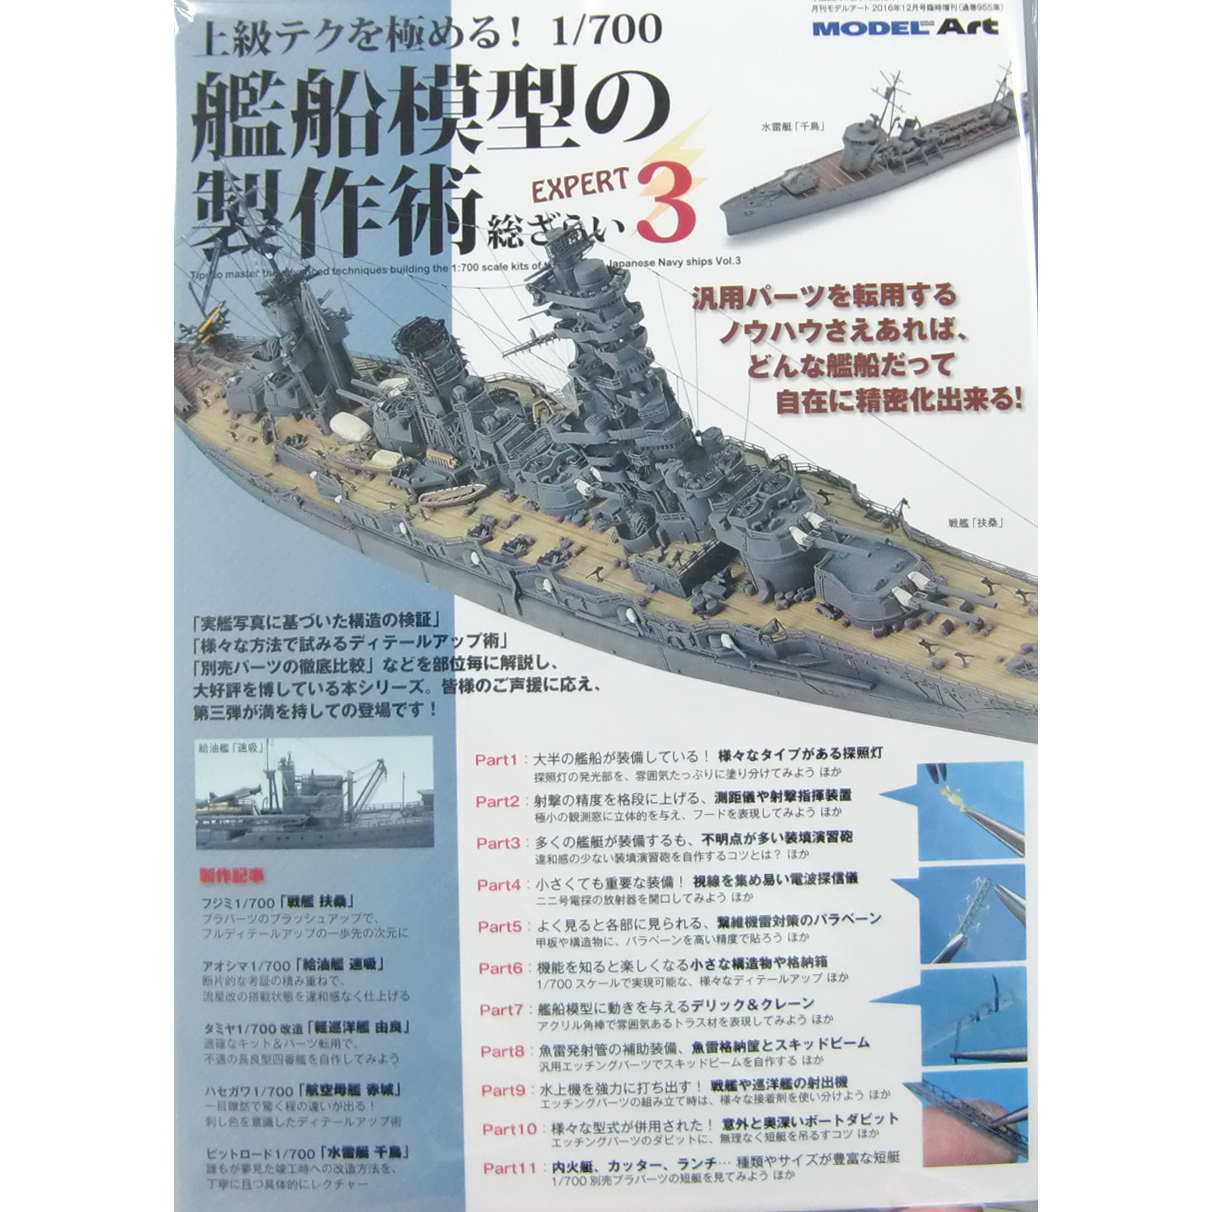 モデルアート新刊「上級テクを極める! 1/700 艦船模型の製作術 総ざらい3」入荷しました。